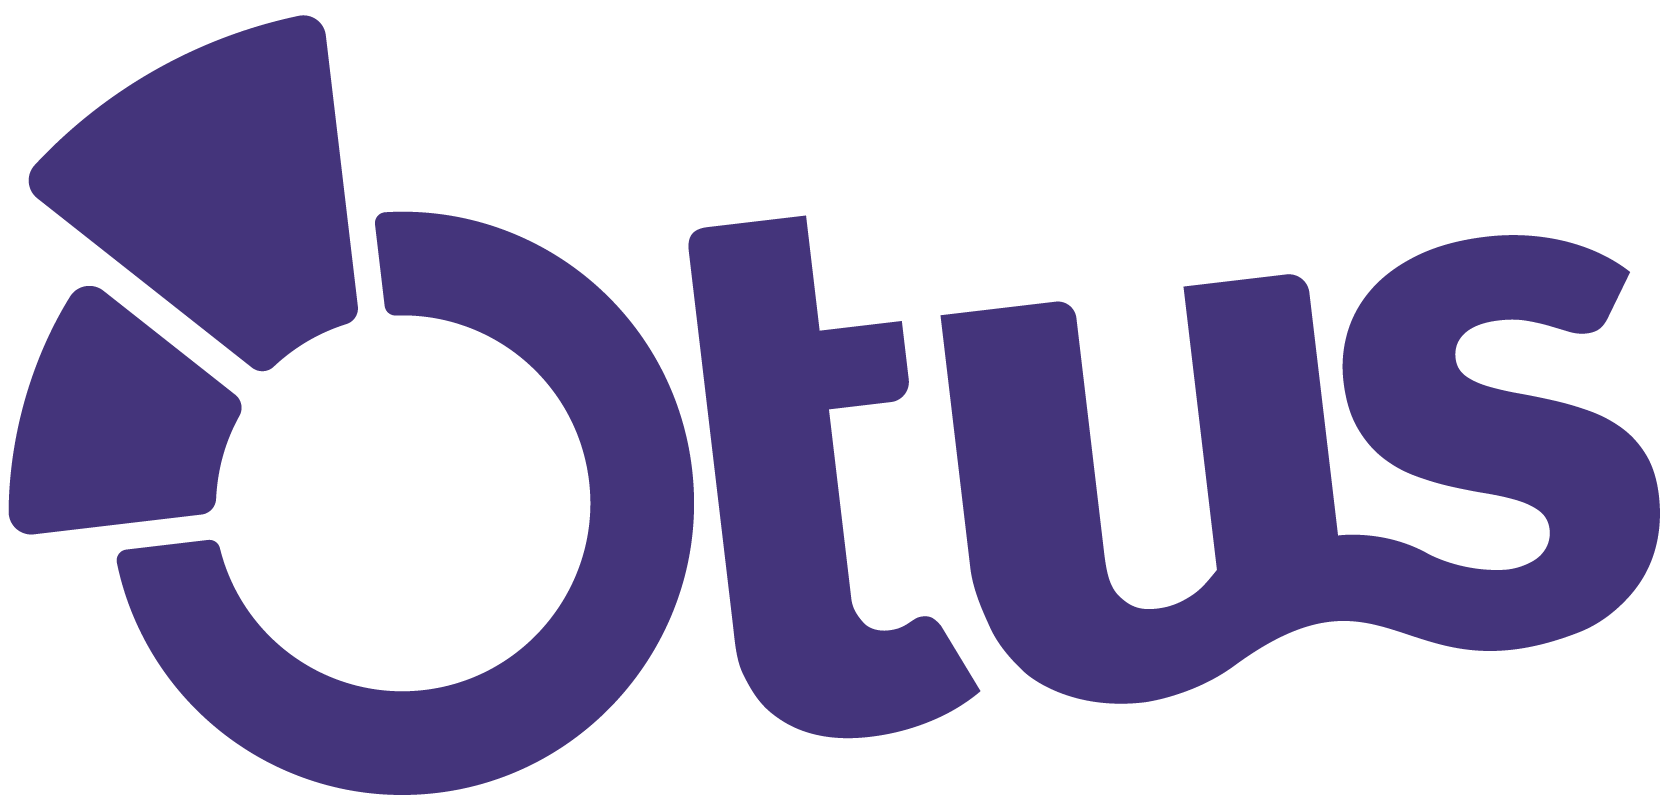 Otus logo